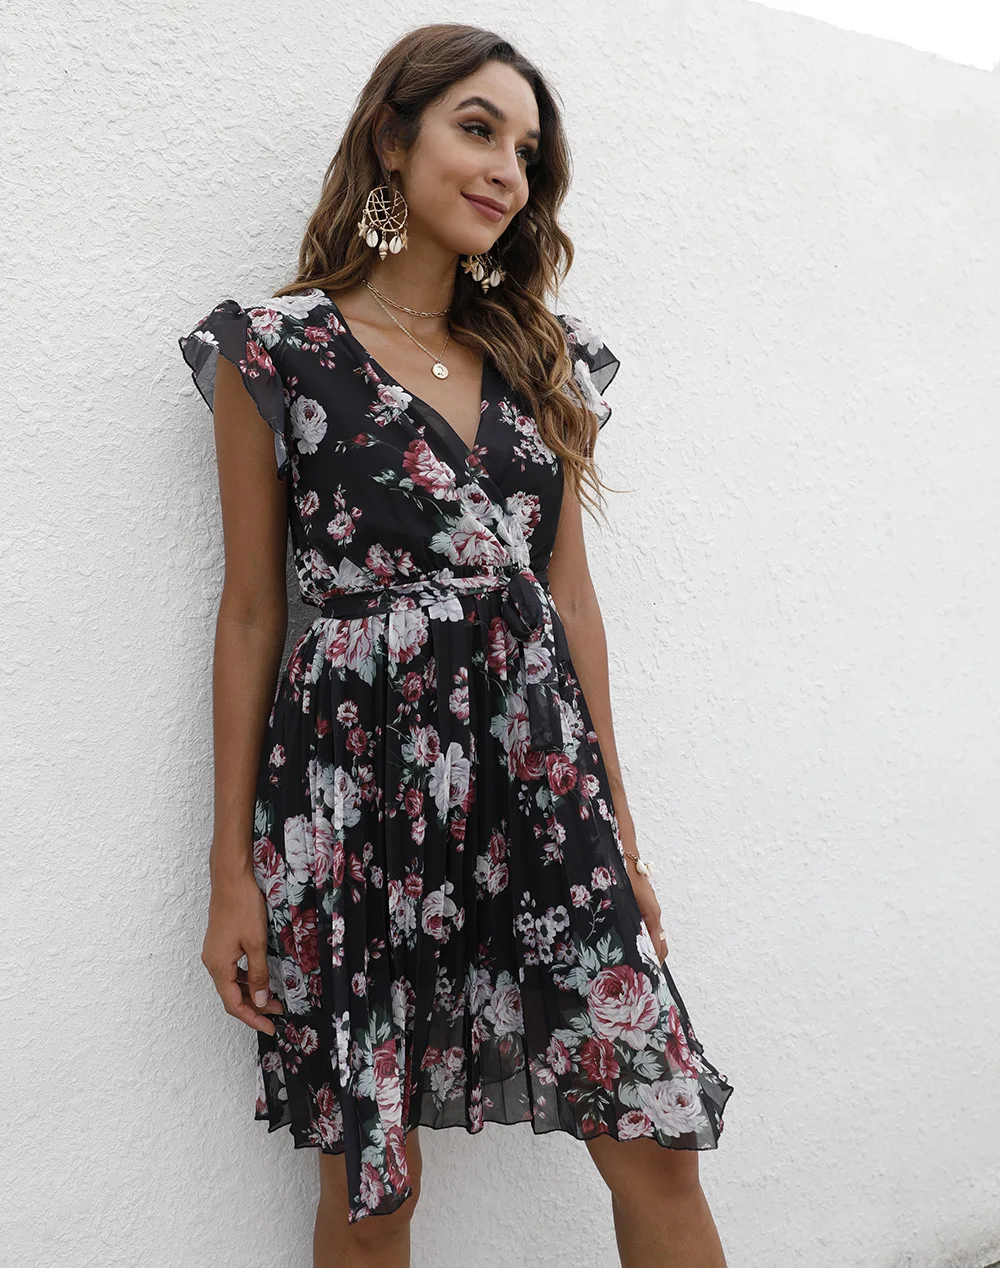 Женское летнее платье с V-образным вырезом и поясом | Женская одежда